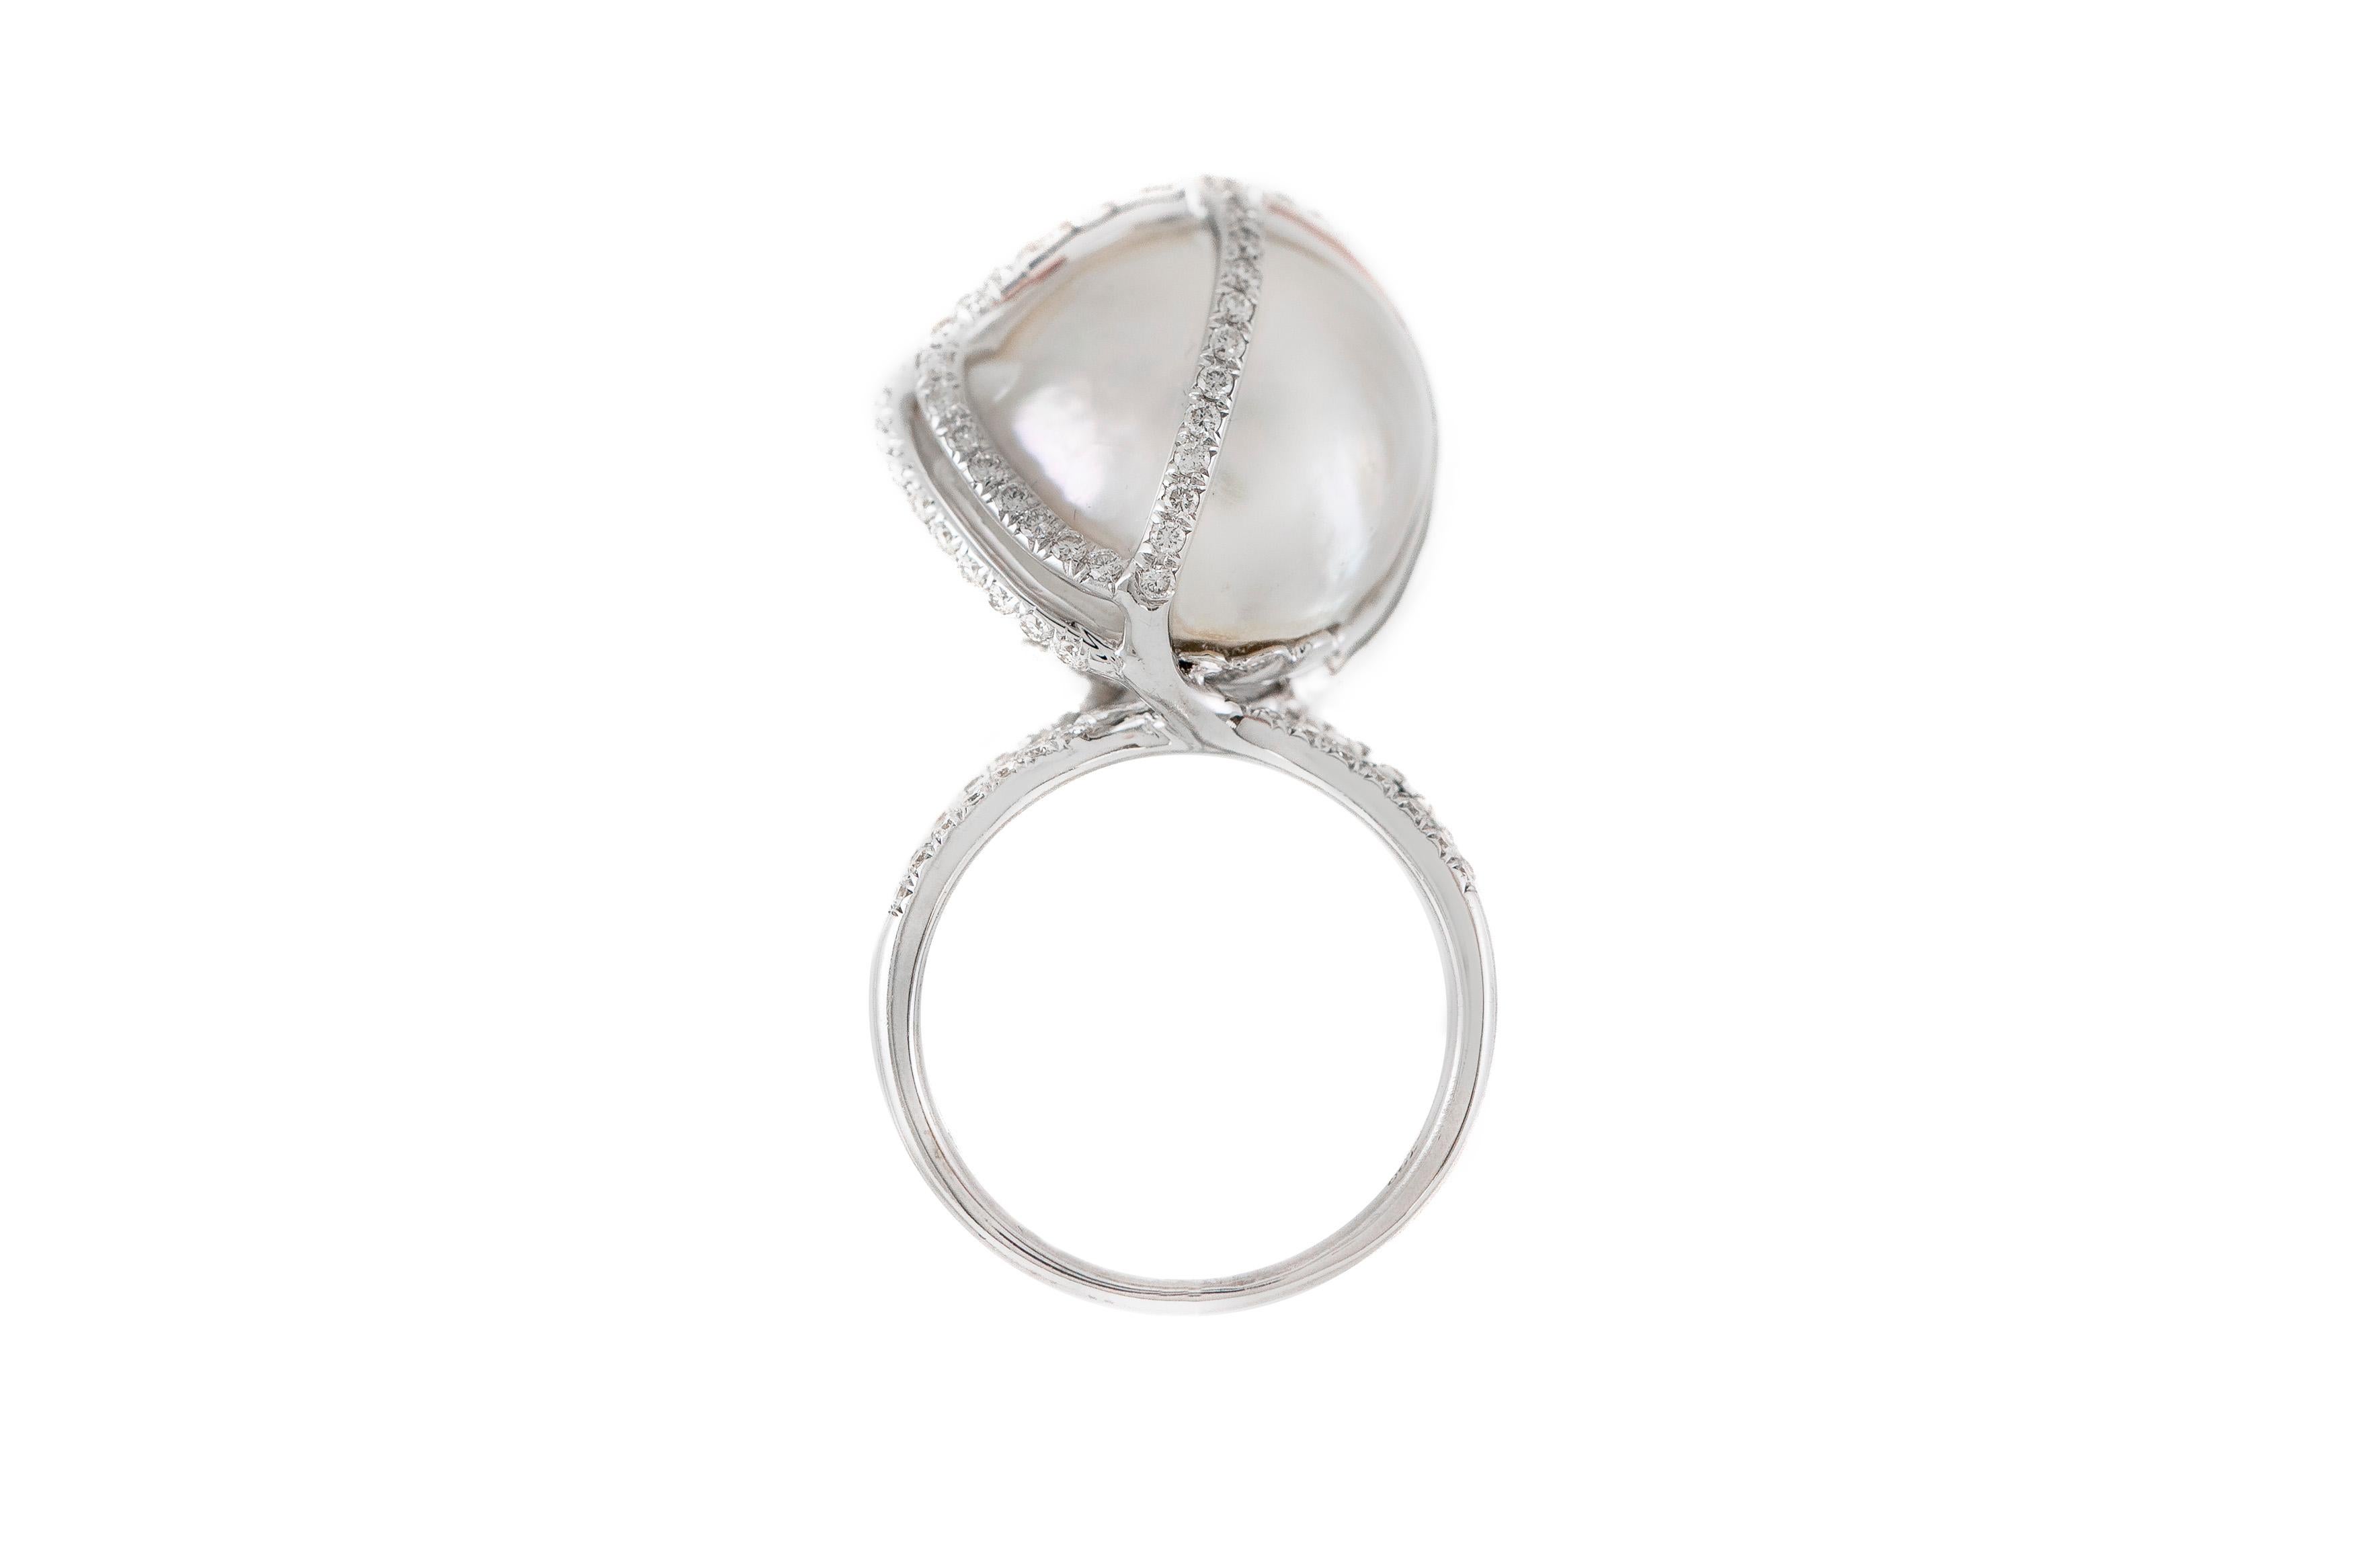 Der Ring ist fein in Handarbeit in 18k Weißgold mit Zentrum Perle und Diamanten mit einem Gesamtgewicht von etwa 1,50 Karat.